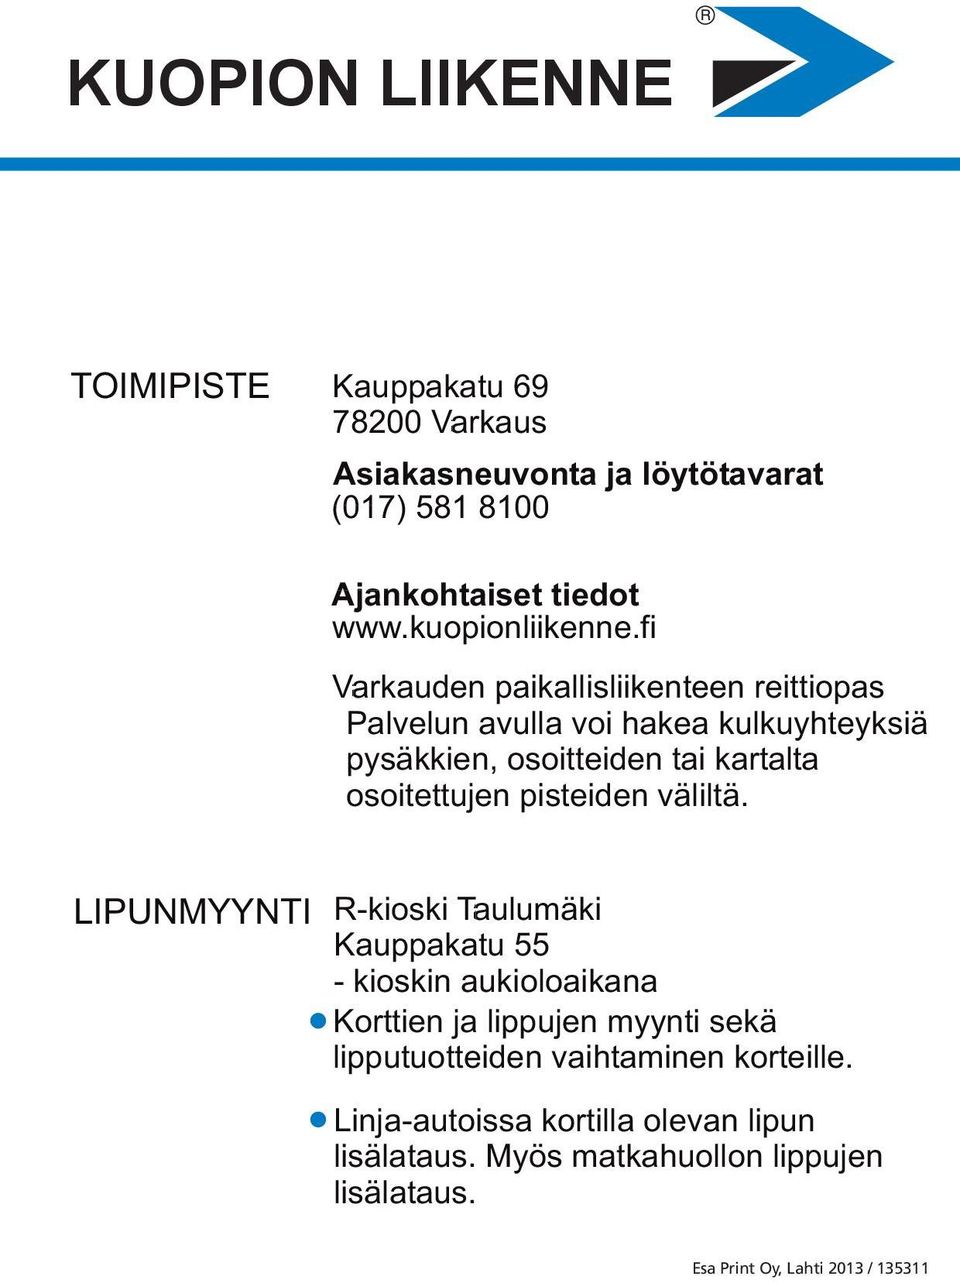 fi Varkauden paikallisliikenteen reittiopas Palvelun avulla voi hakea kulkuyhteyksiä pysäkkien, osoitteiden tai kartalta osoitettujen